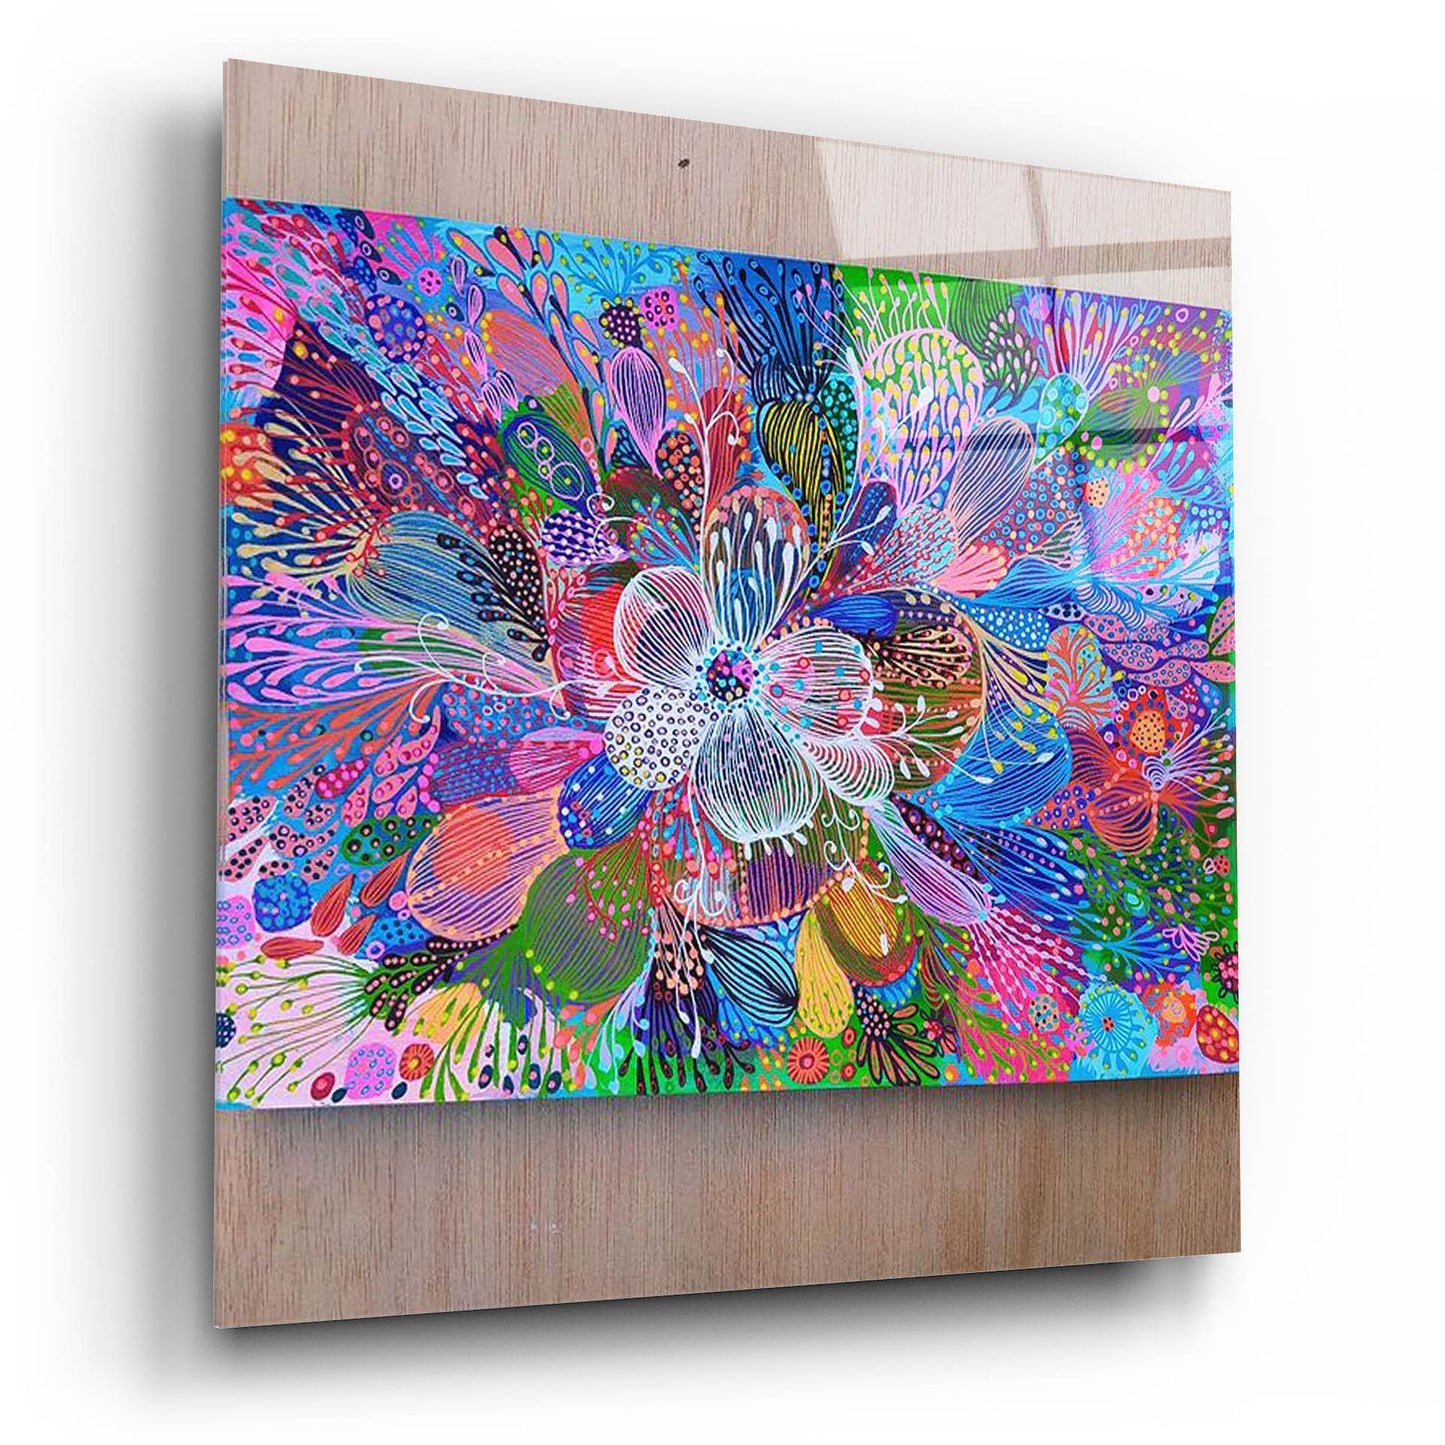 Epic Art 'Blooming2 by Noemi Ibarz, Acrylic Glass Wall Art,12x12